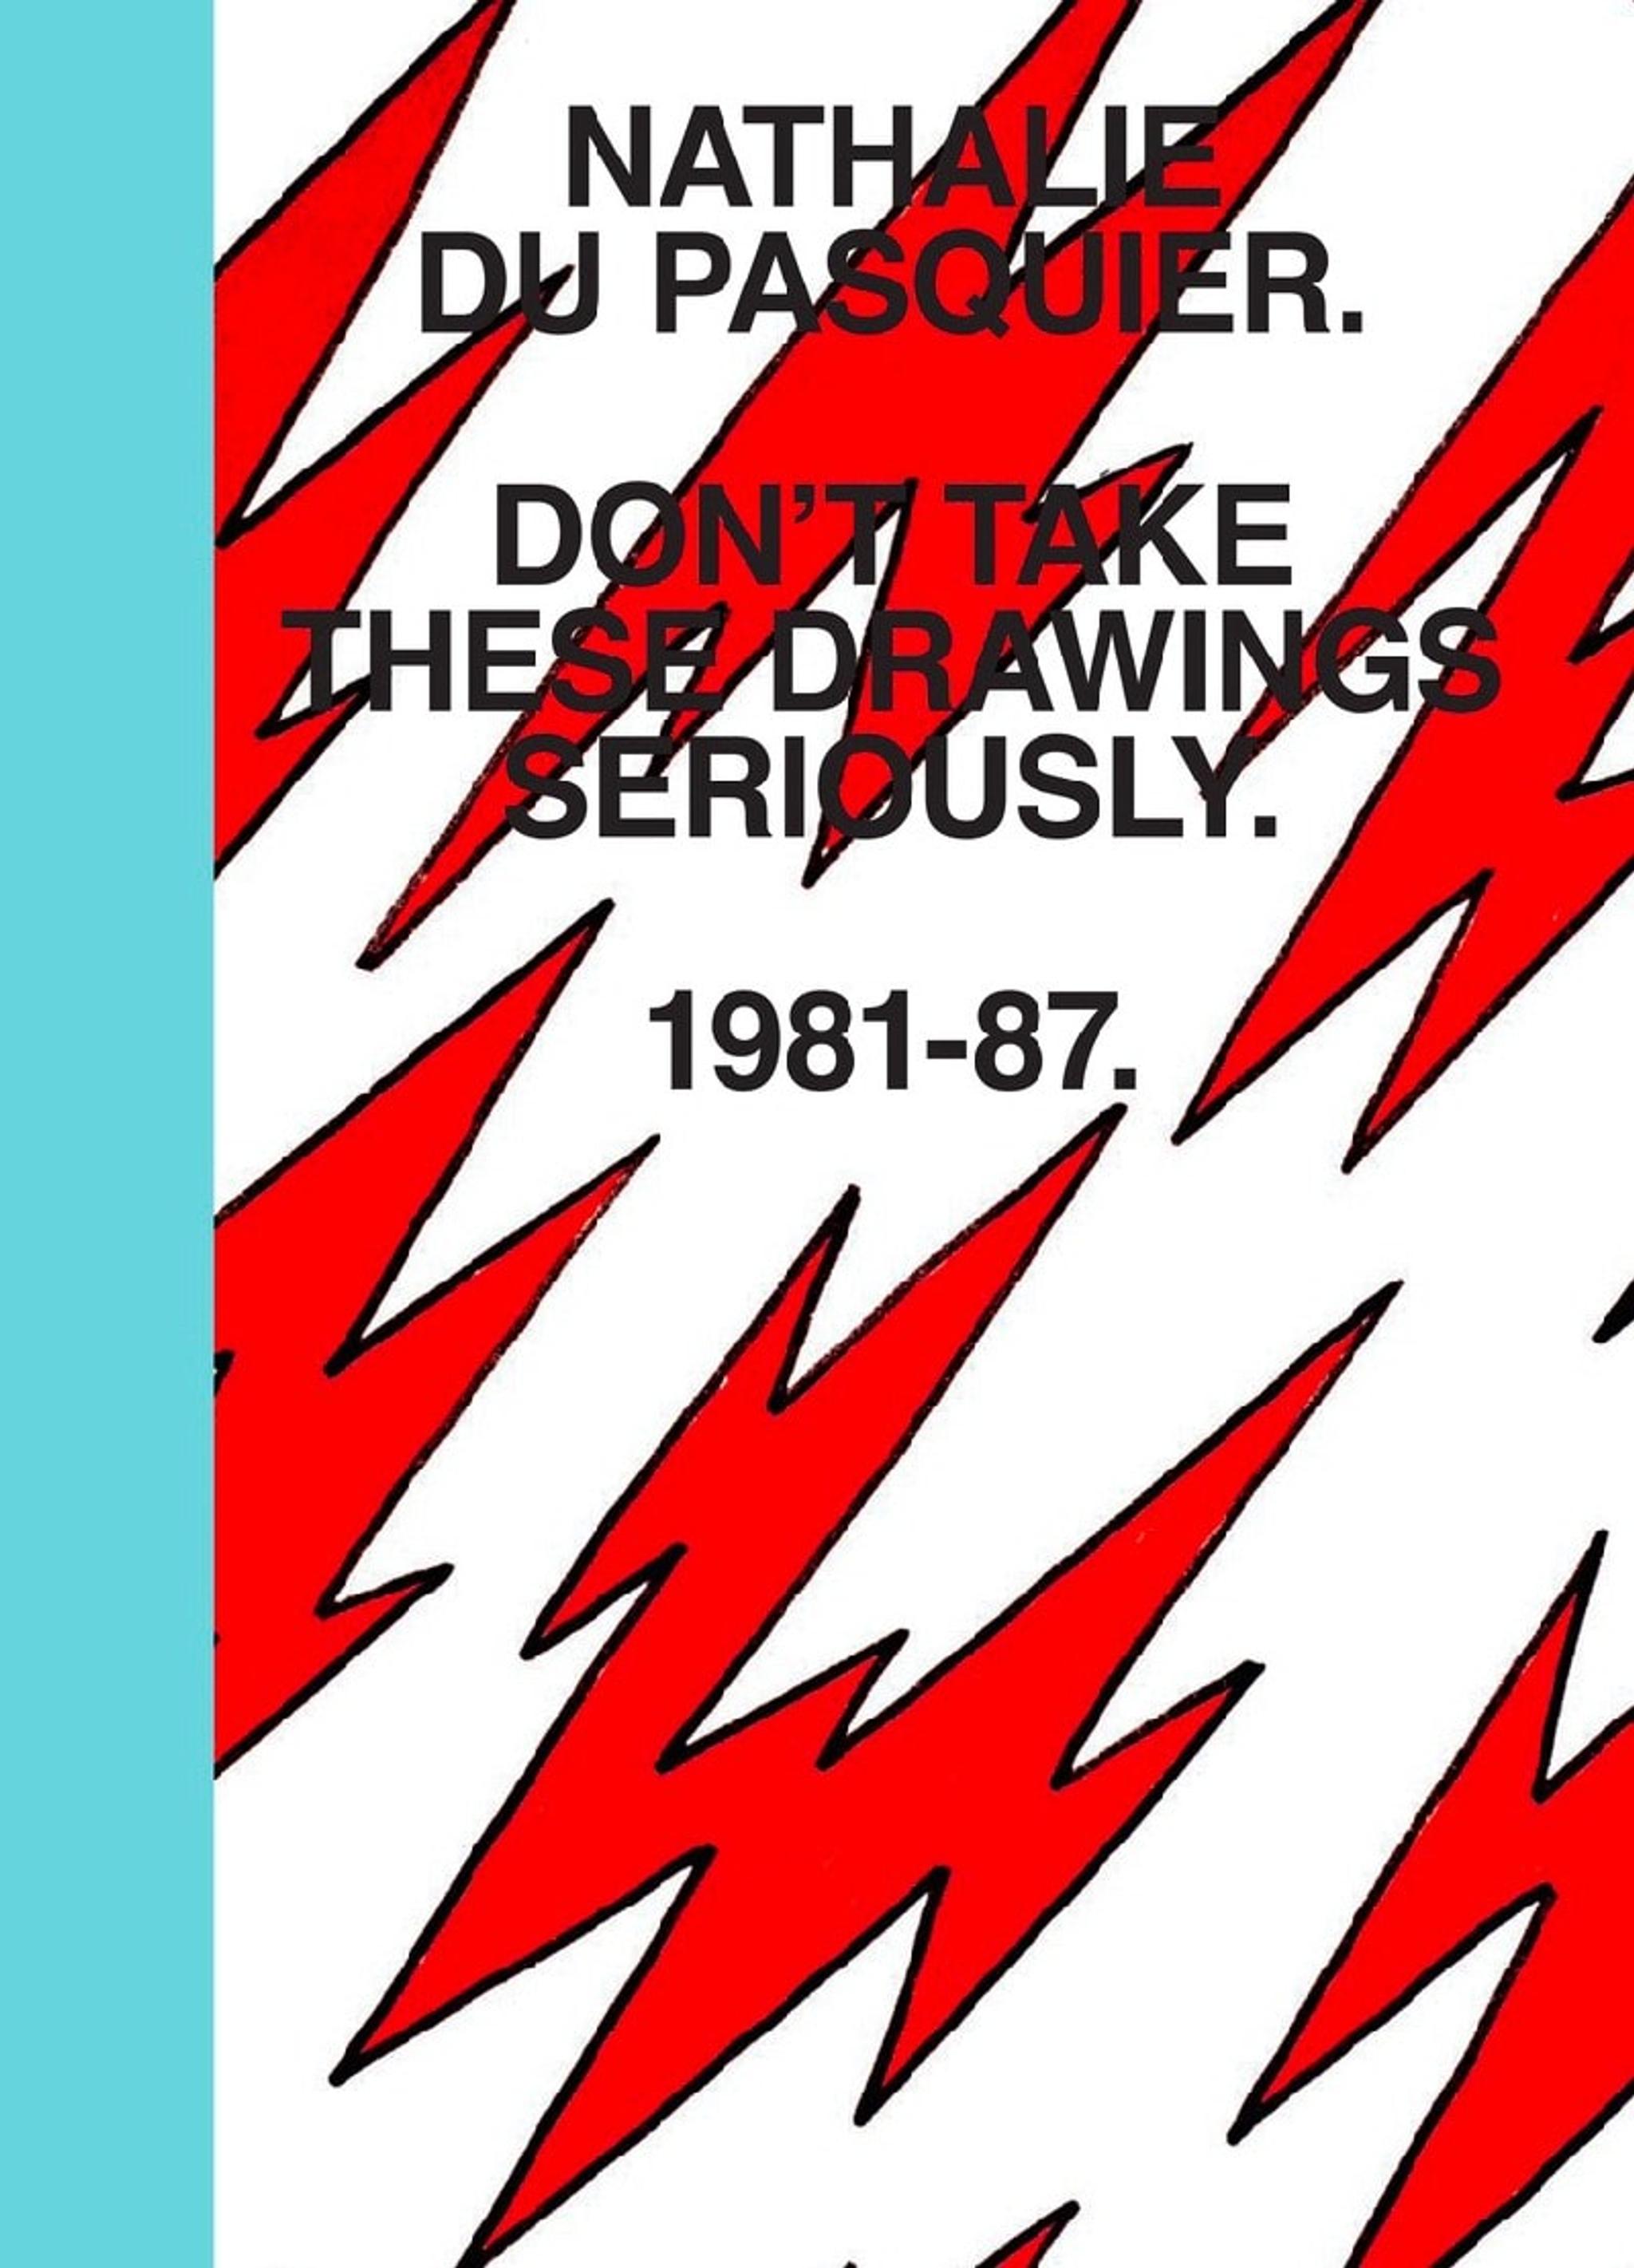 Couverture du livre "Don't Take These Drawings Seriously" de Nathalie Du Pasquier. Conçu par Omar Sosa